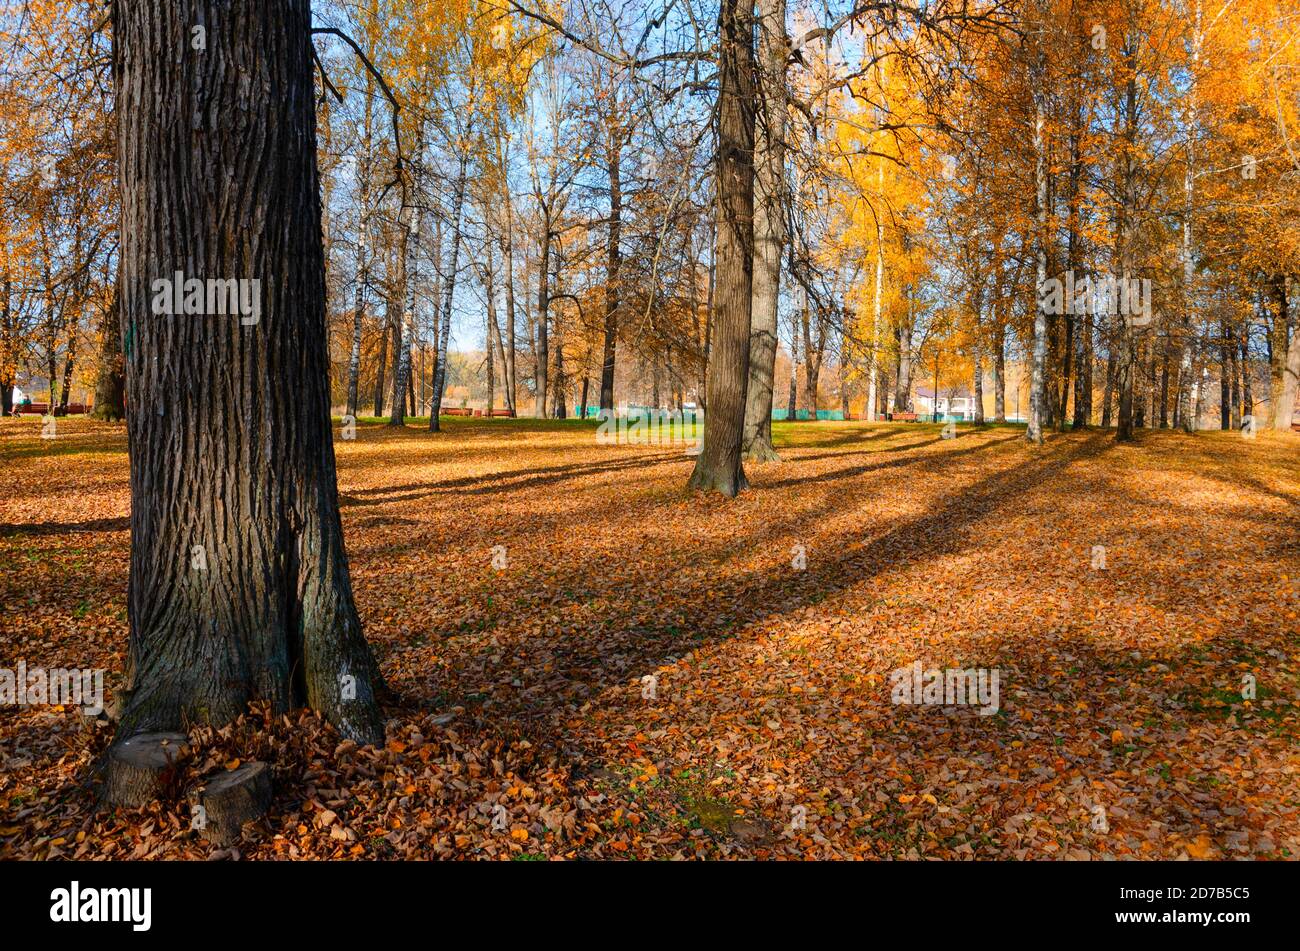 Scène d'automne ensoleillée avec terre couverte de feuilles orange et rouge dans un parc vide. Banque D'Images